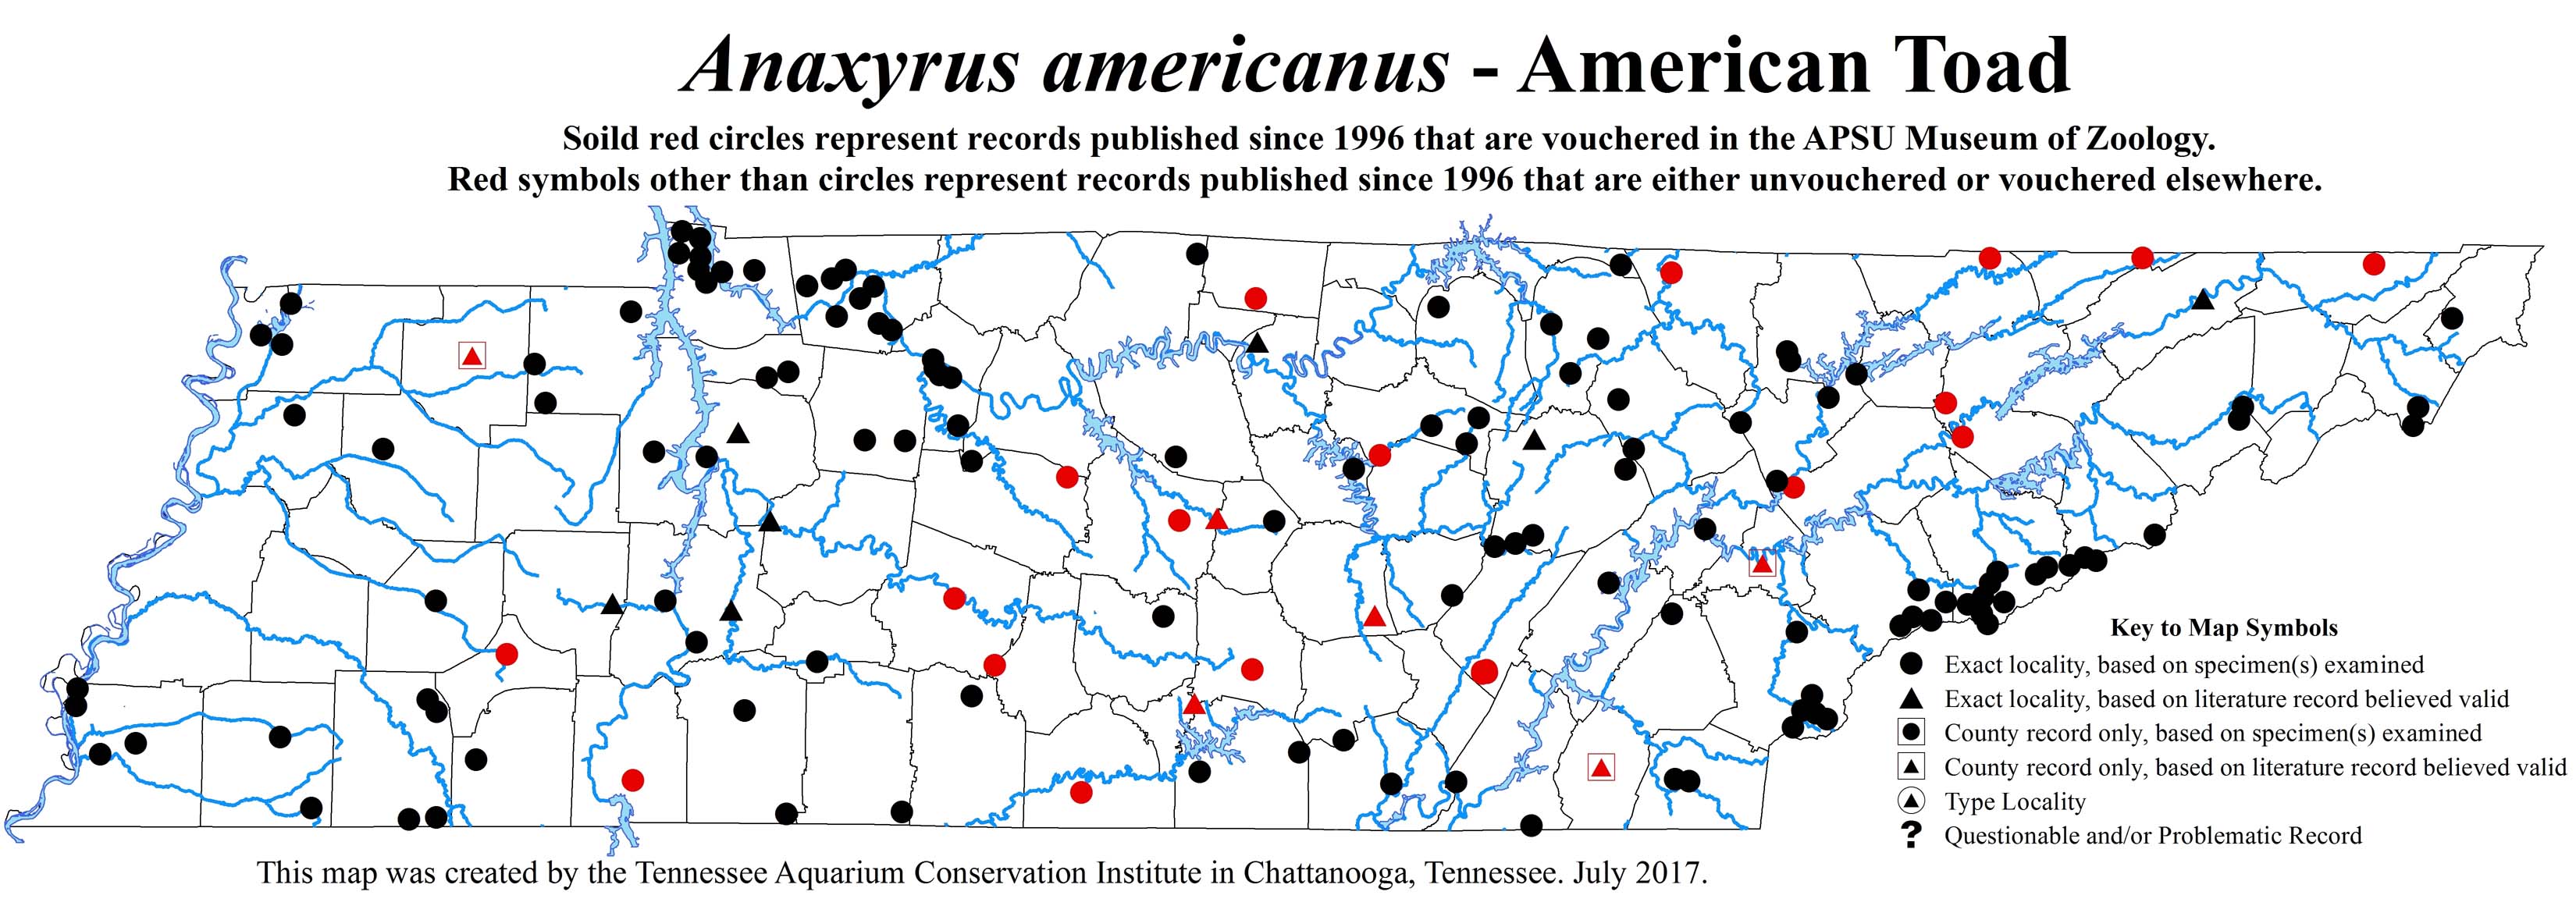 Update to Anaxyrus americanus